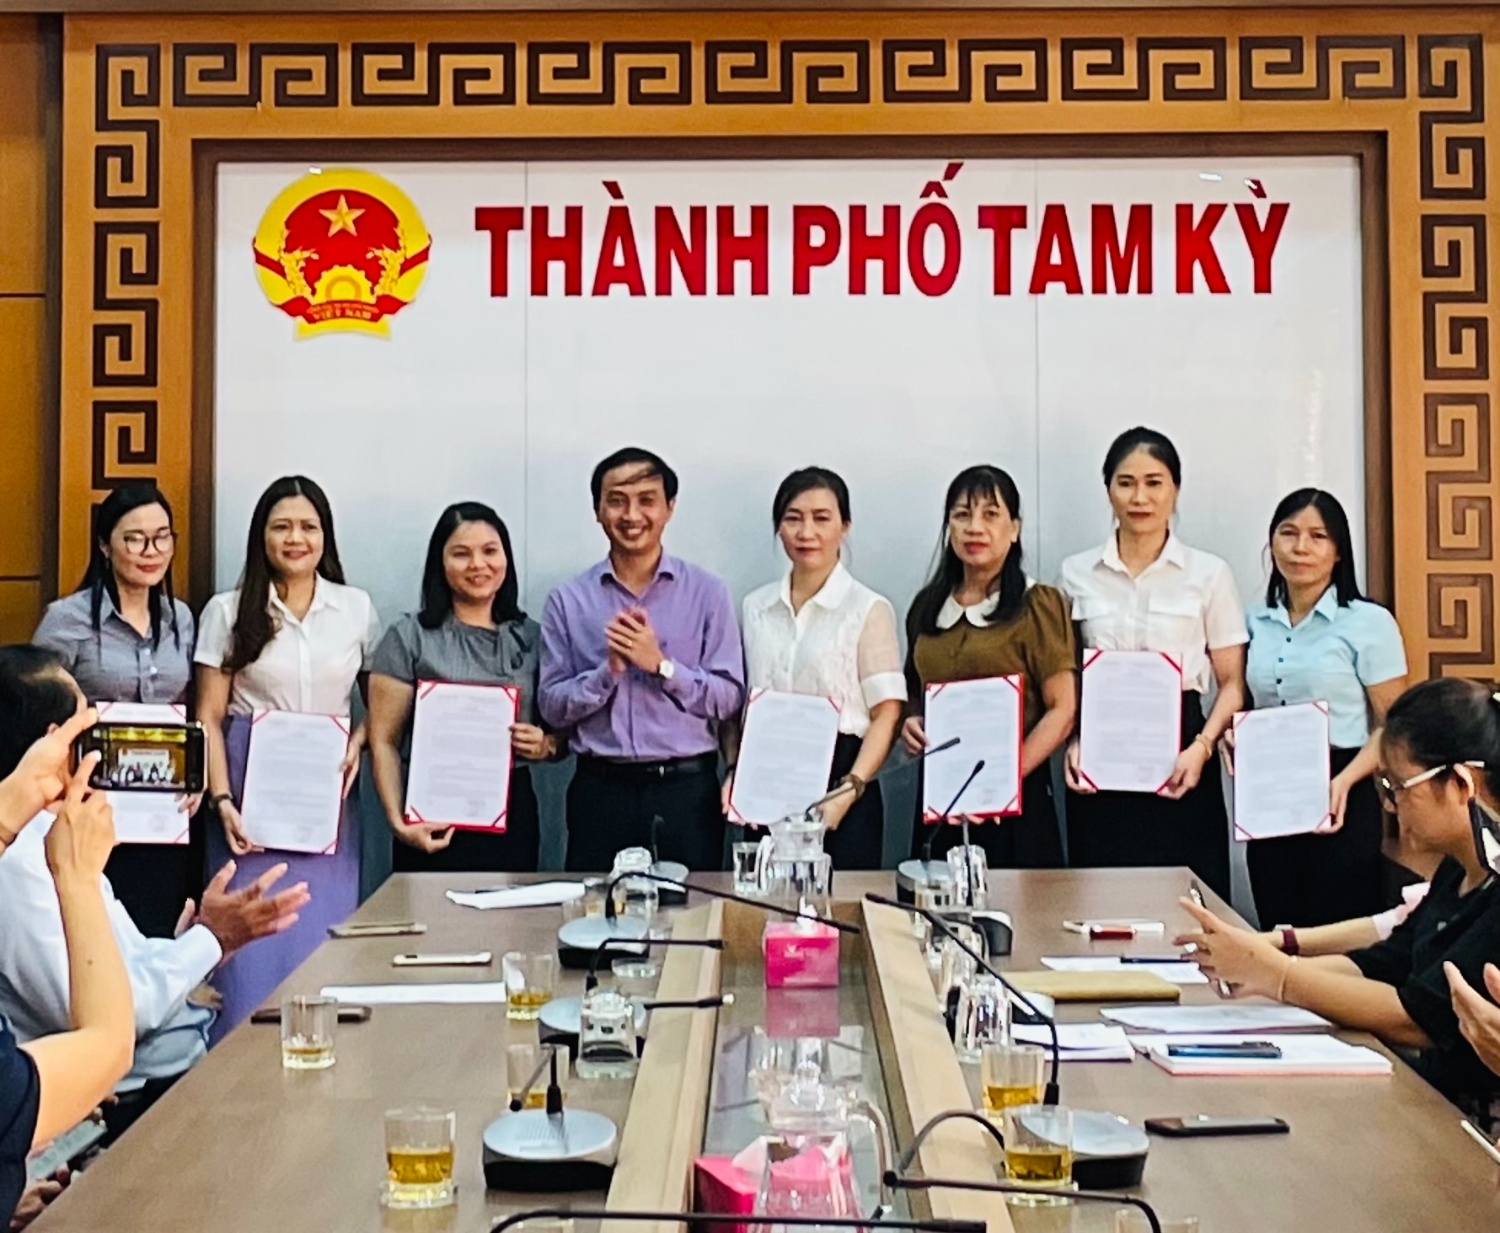 PCT UBND TP Tam Kỳ Nguyễn Hồng Lai trao quyết định chuyển đổi công tác cho các viên chức kế toán